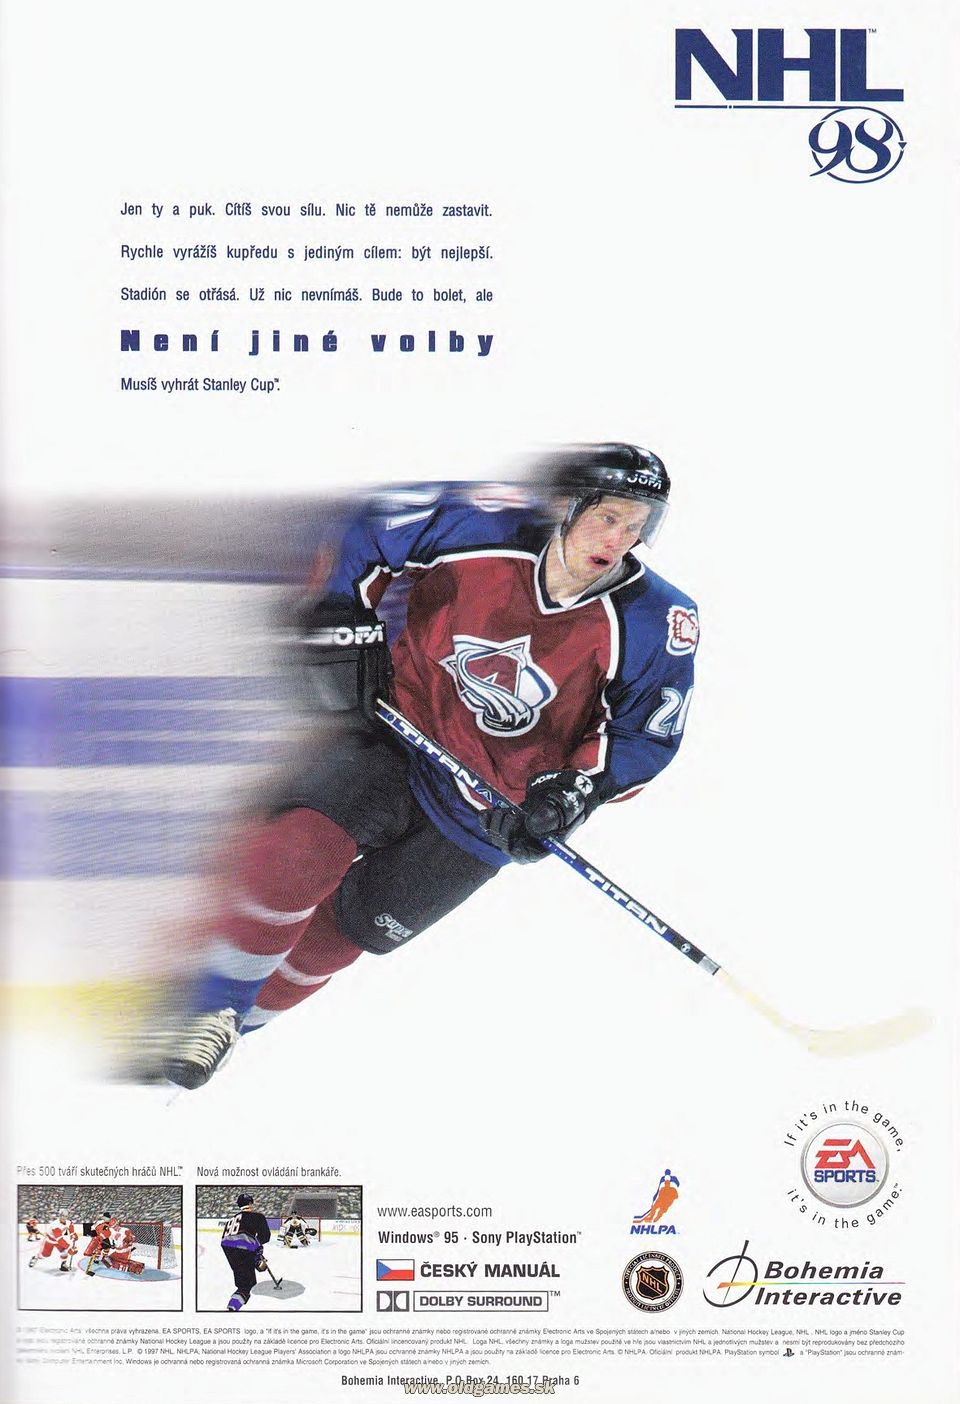 reklama - NHL 98